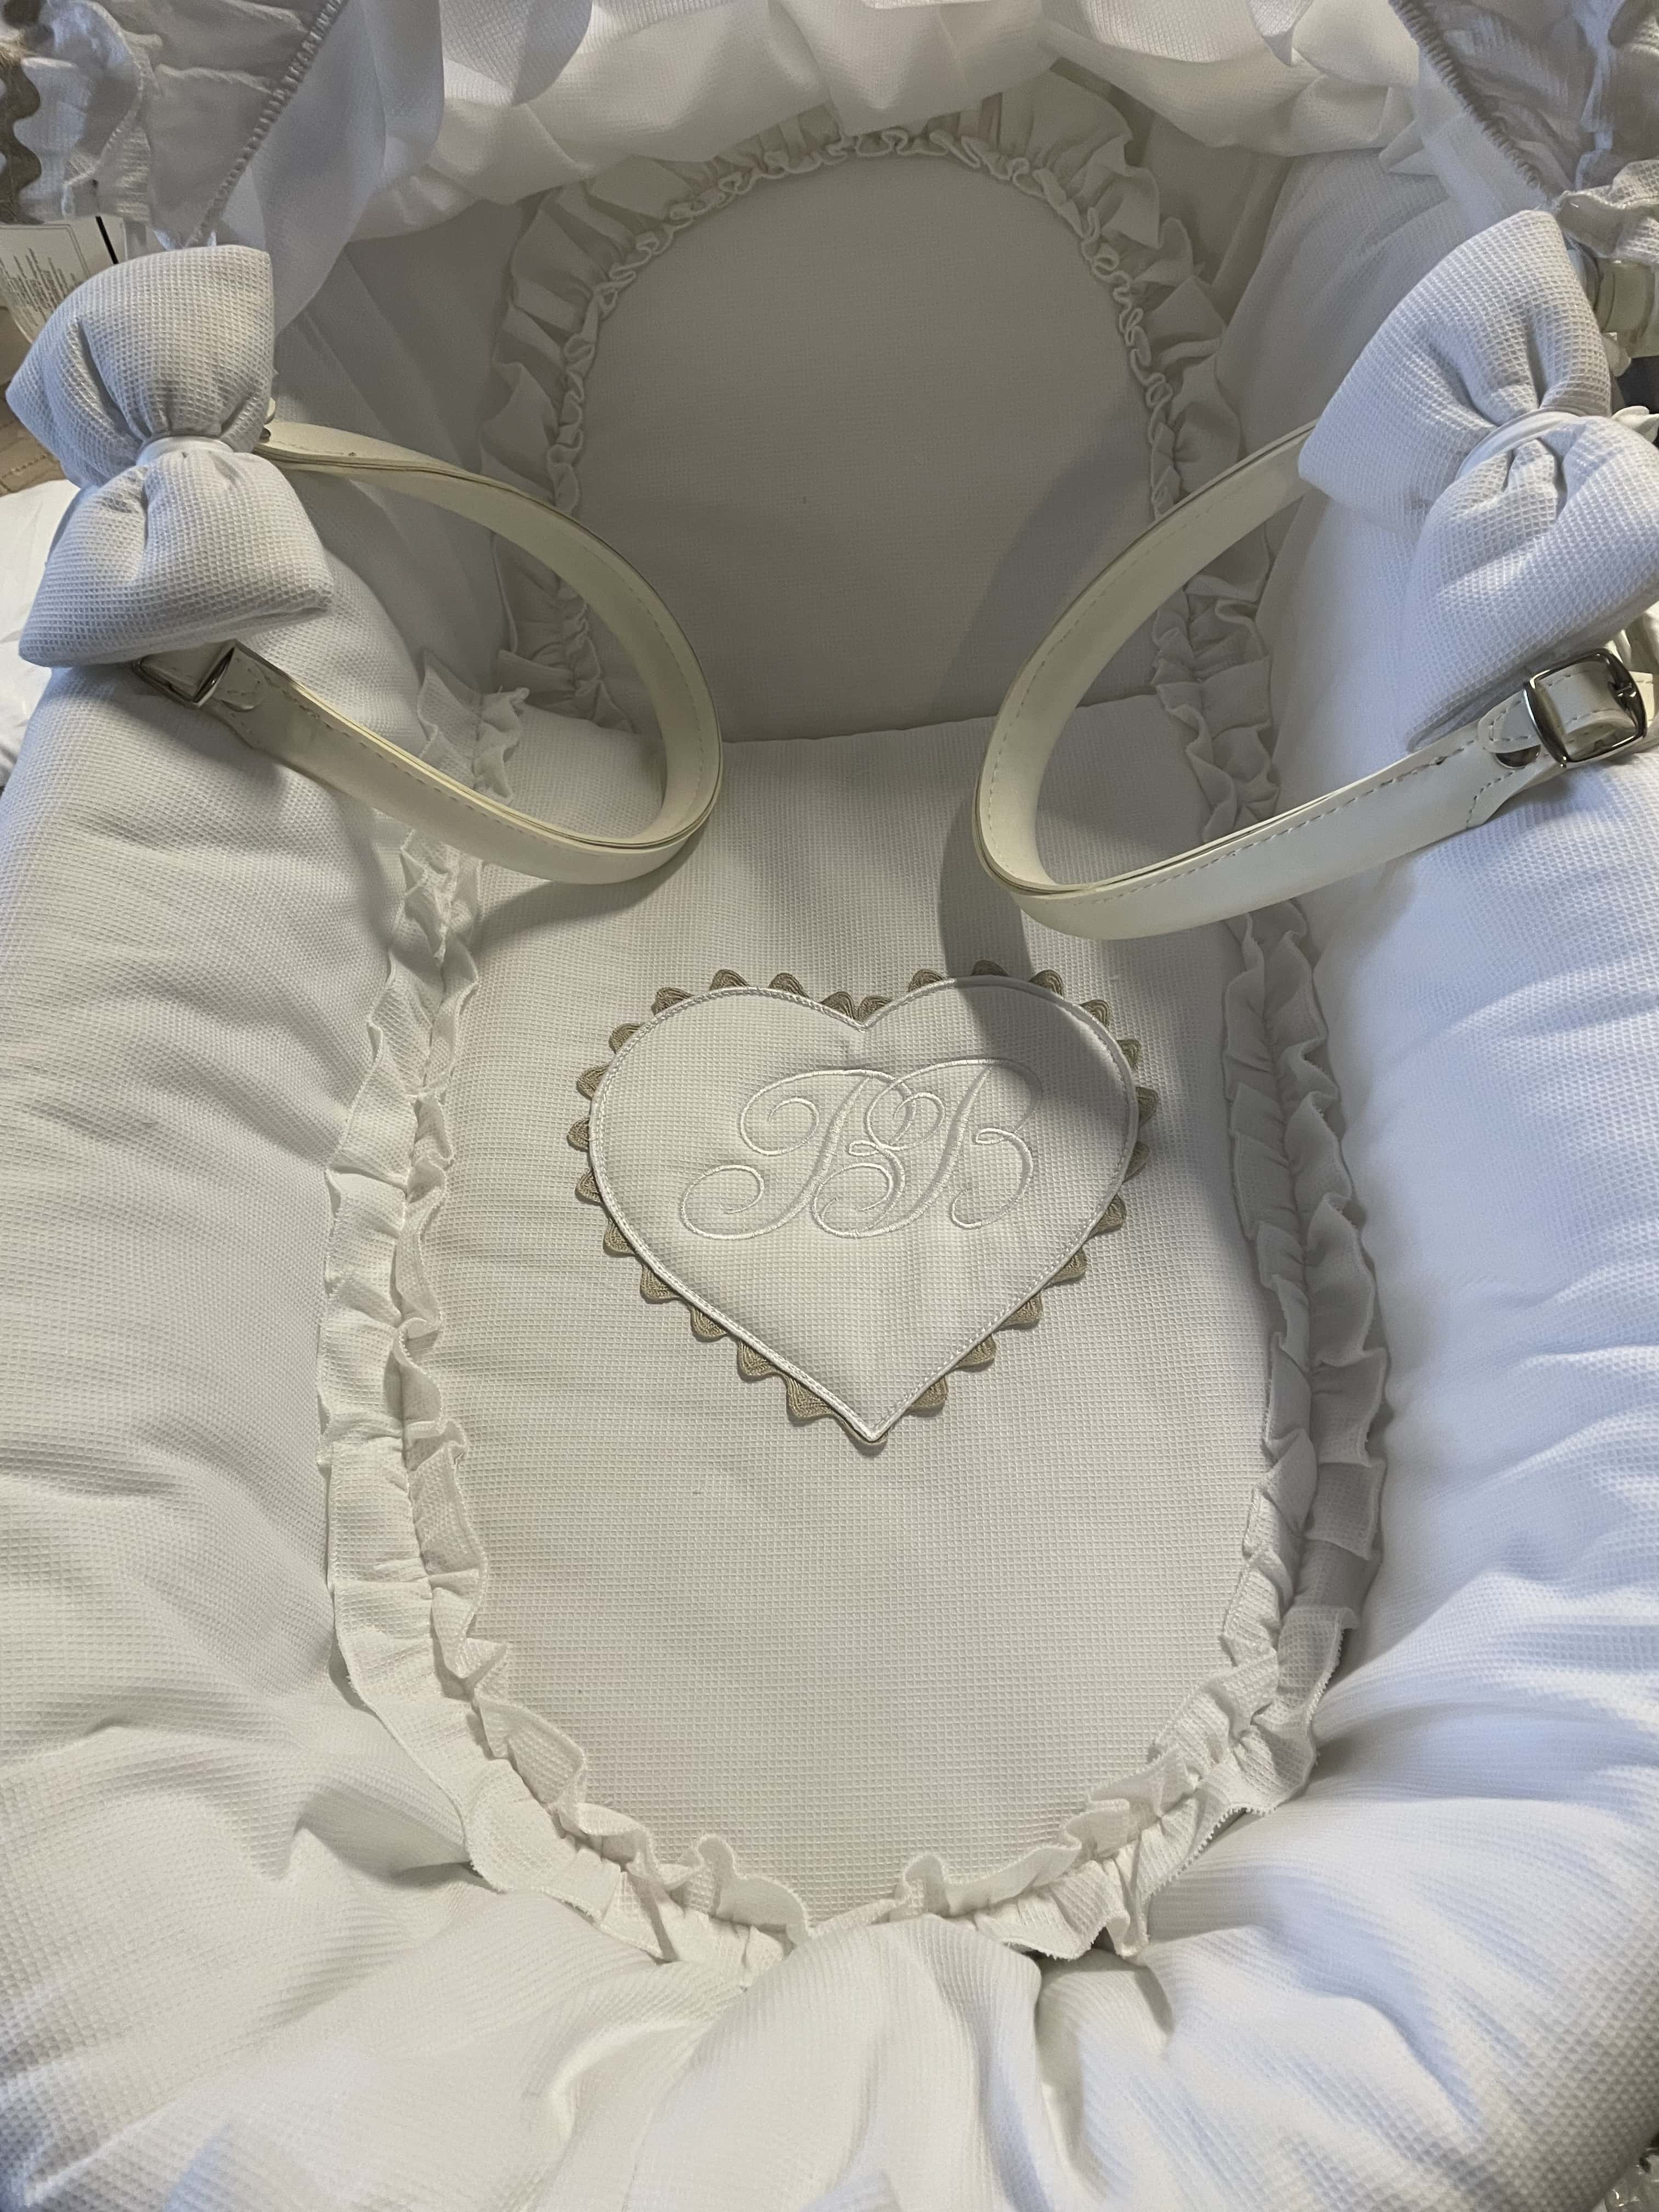 Trousseau de naissance : comment composer le trousseau de bébé ?